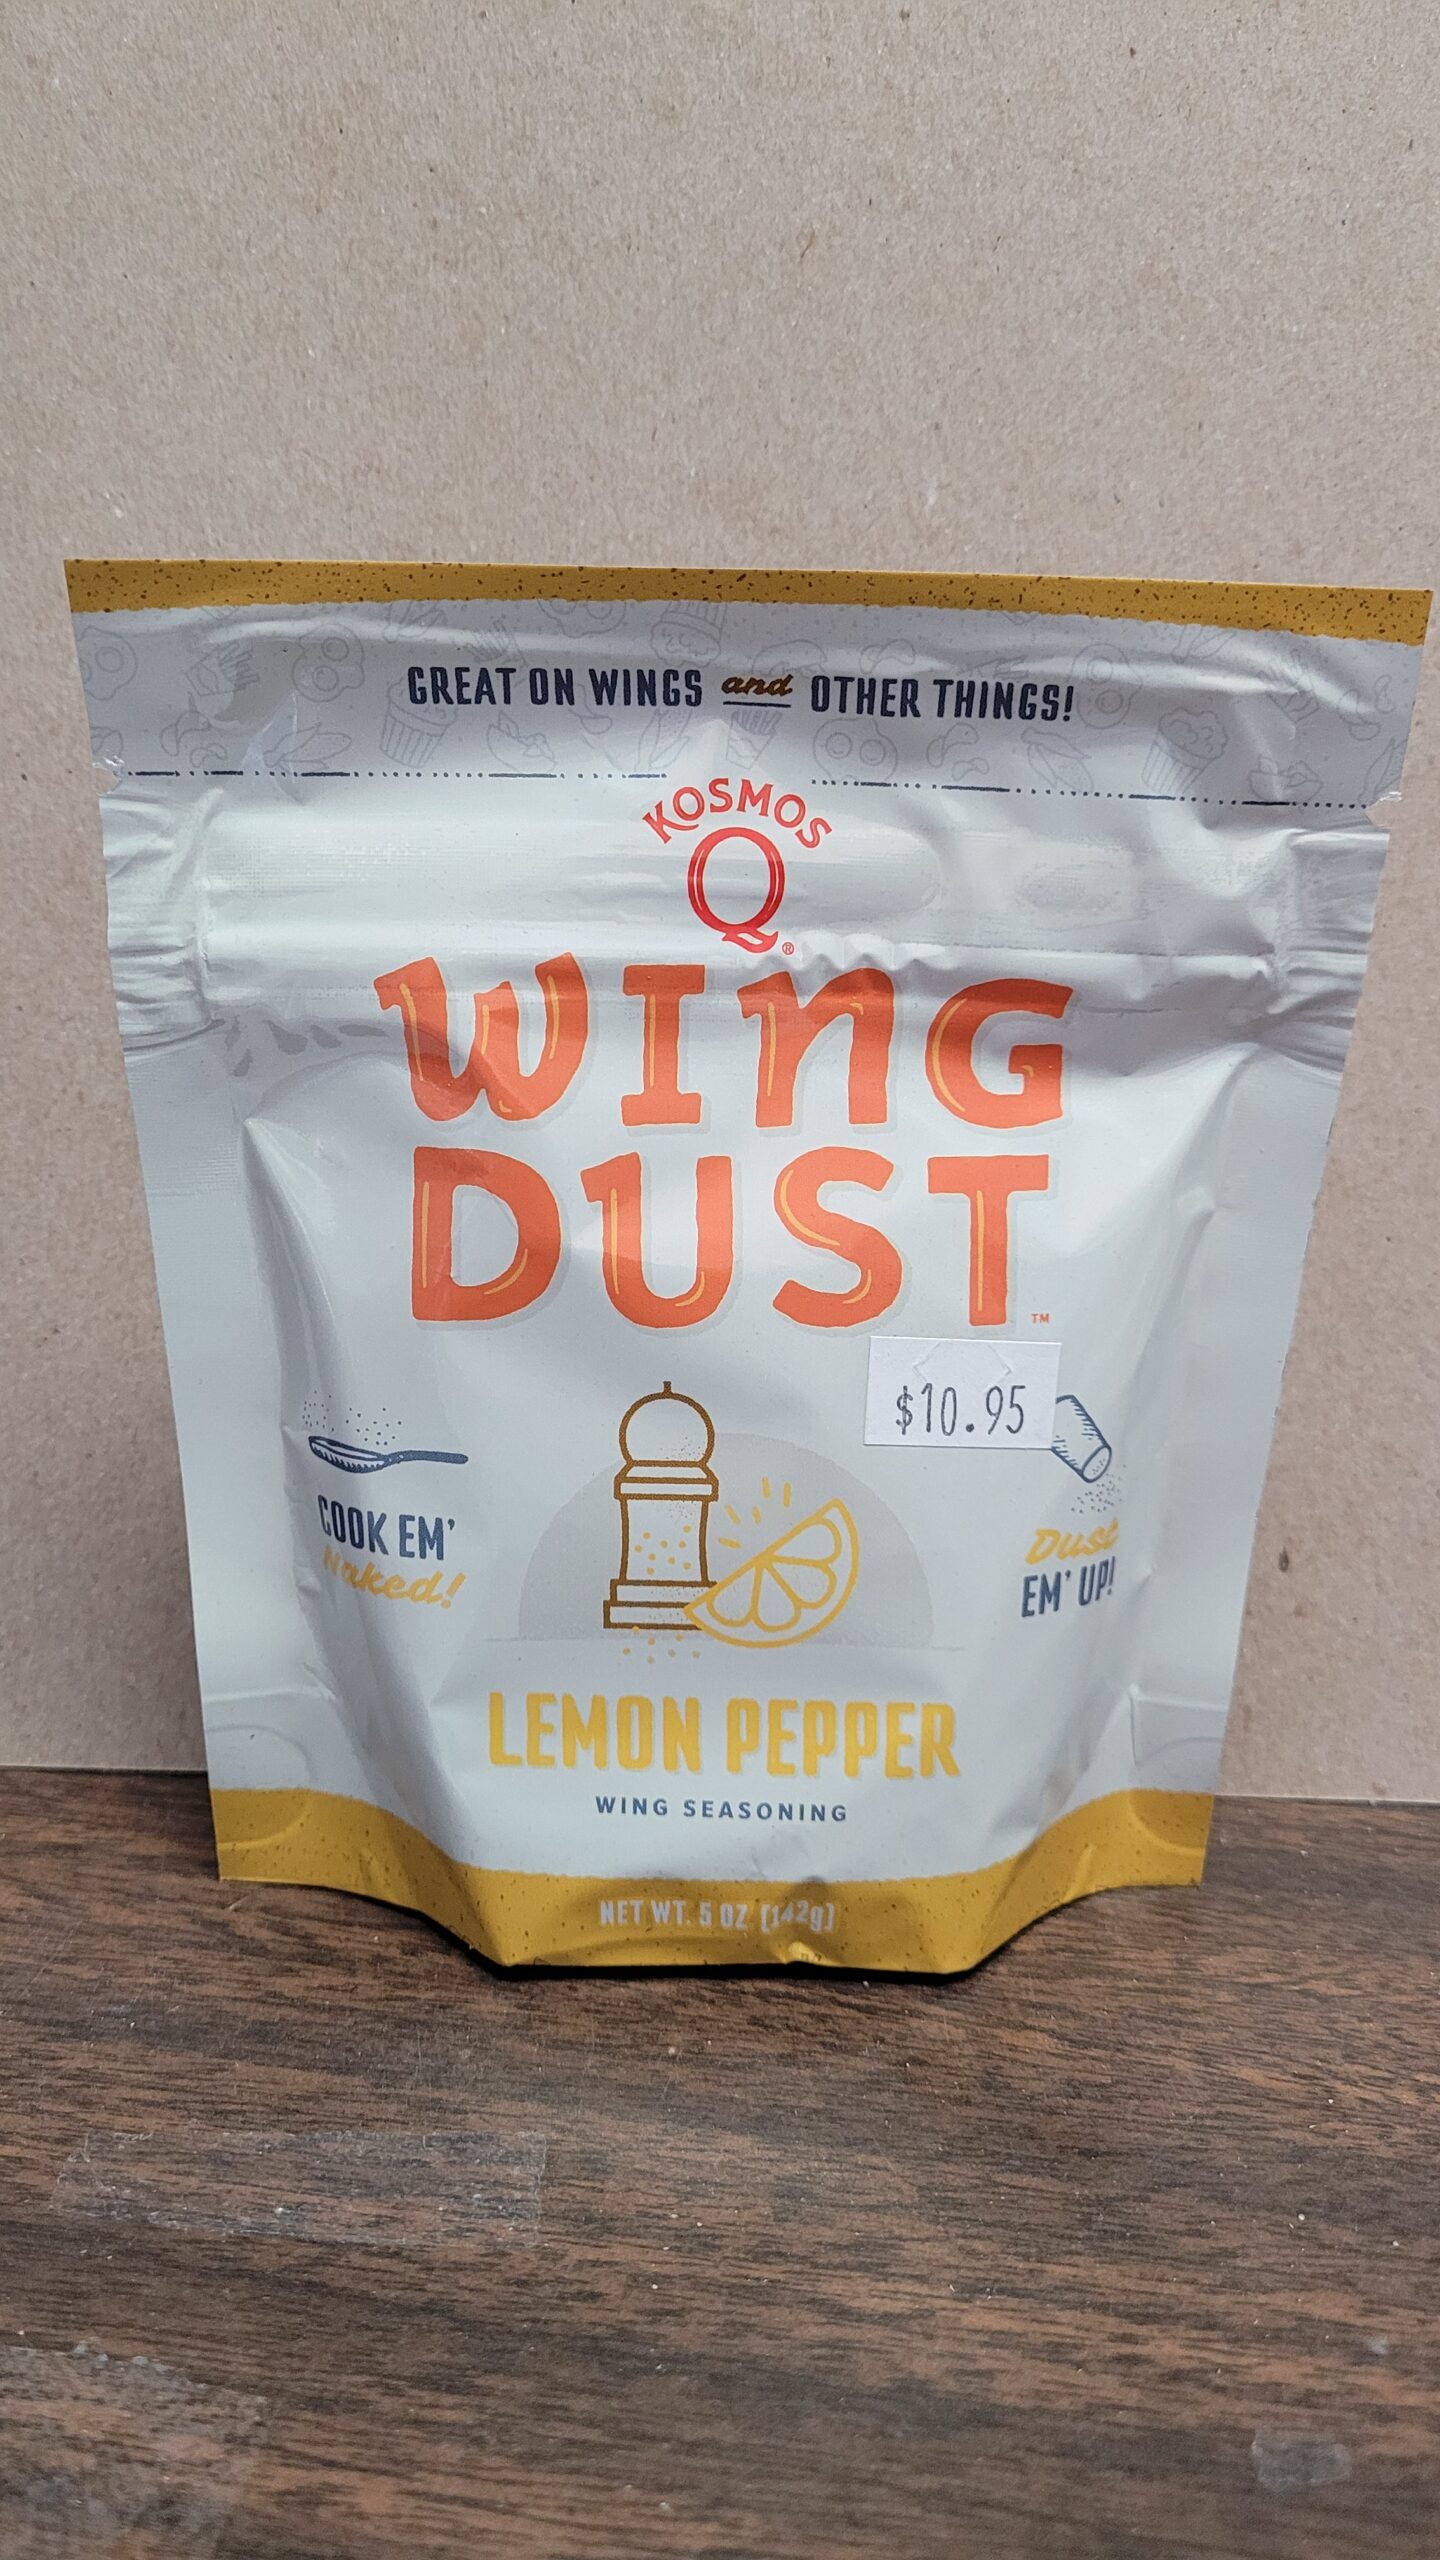 KOSMOS Wing Dust Lemon Pepper wing seasoning - Lake Fireplace & Spa